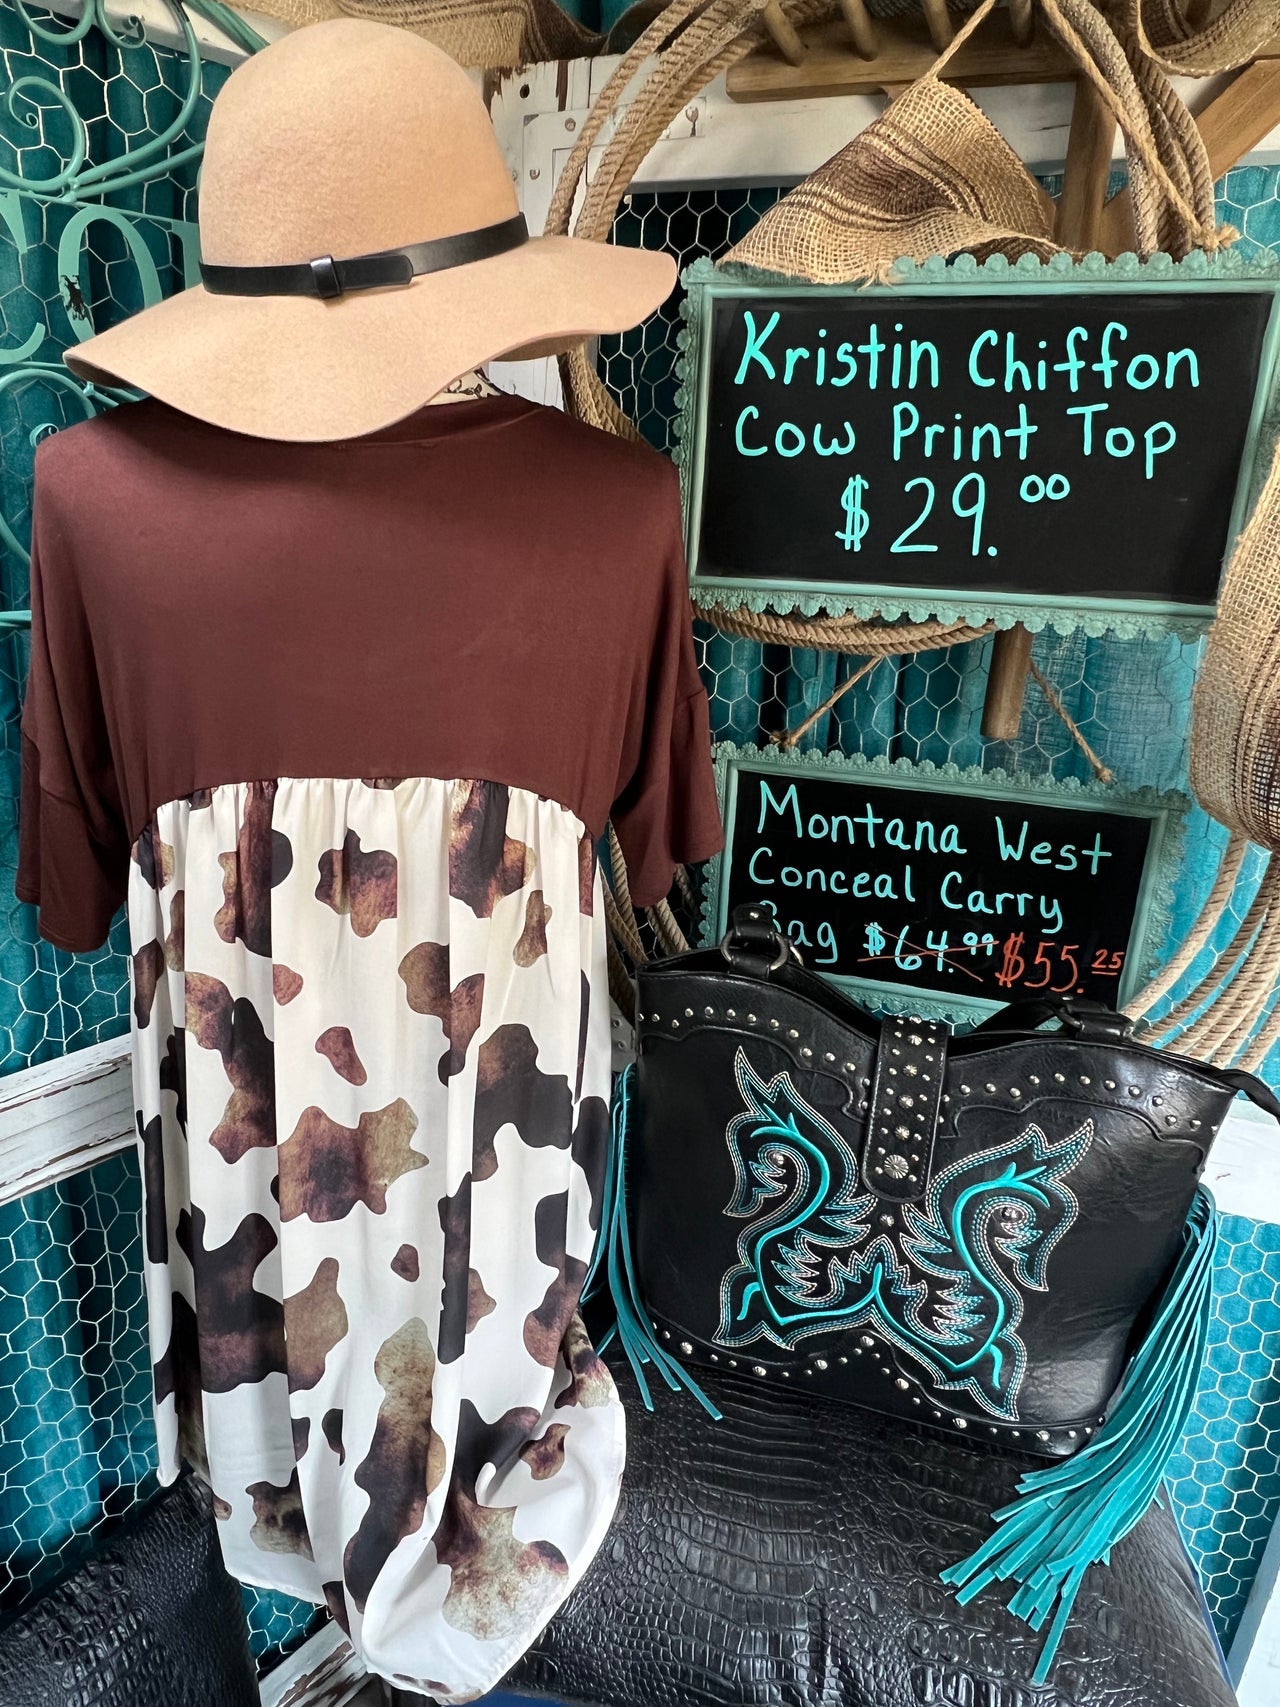 Kristin Chiffon Cow Print Top